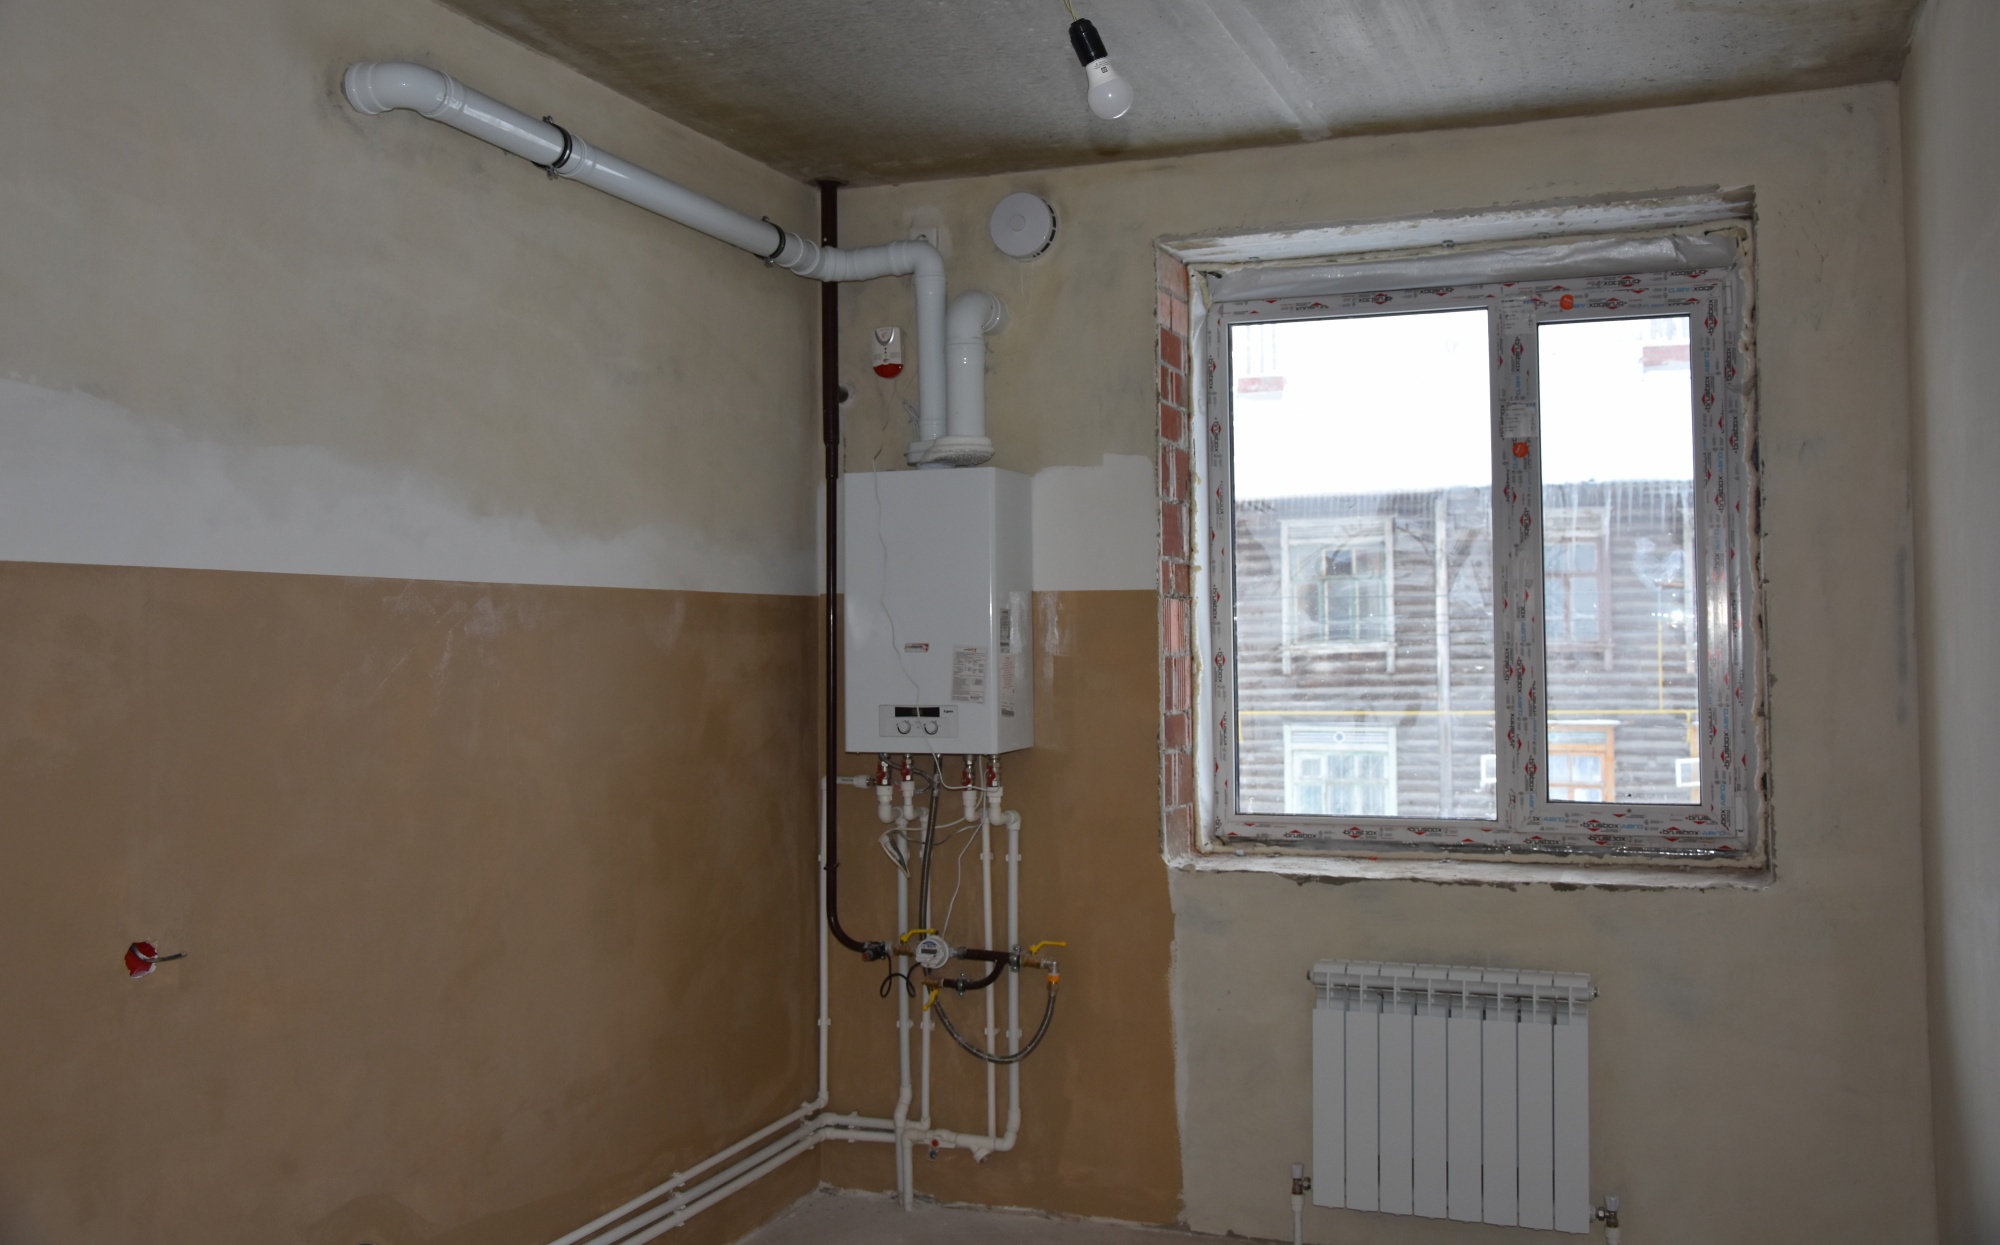 Костромская мэрия приступила к составлению плана ремонта муниципального жилья на текущий год